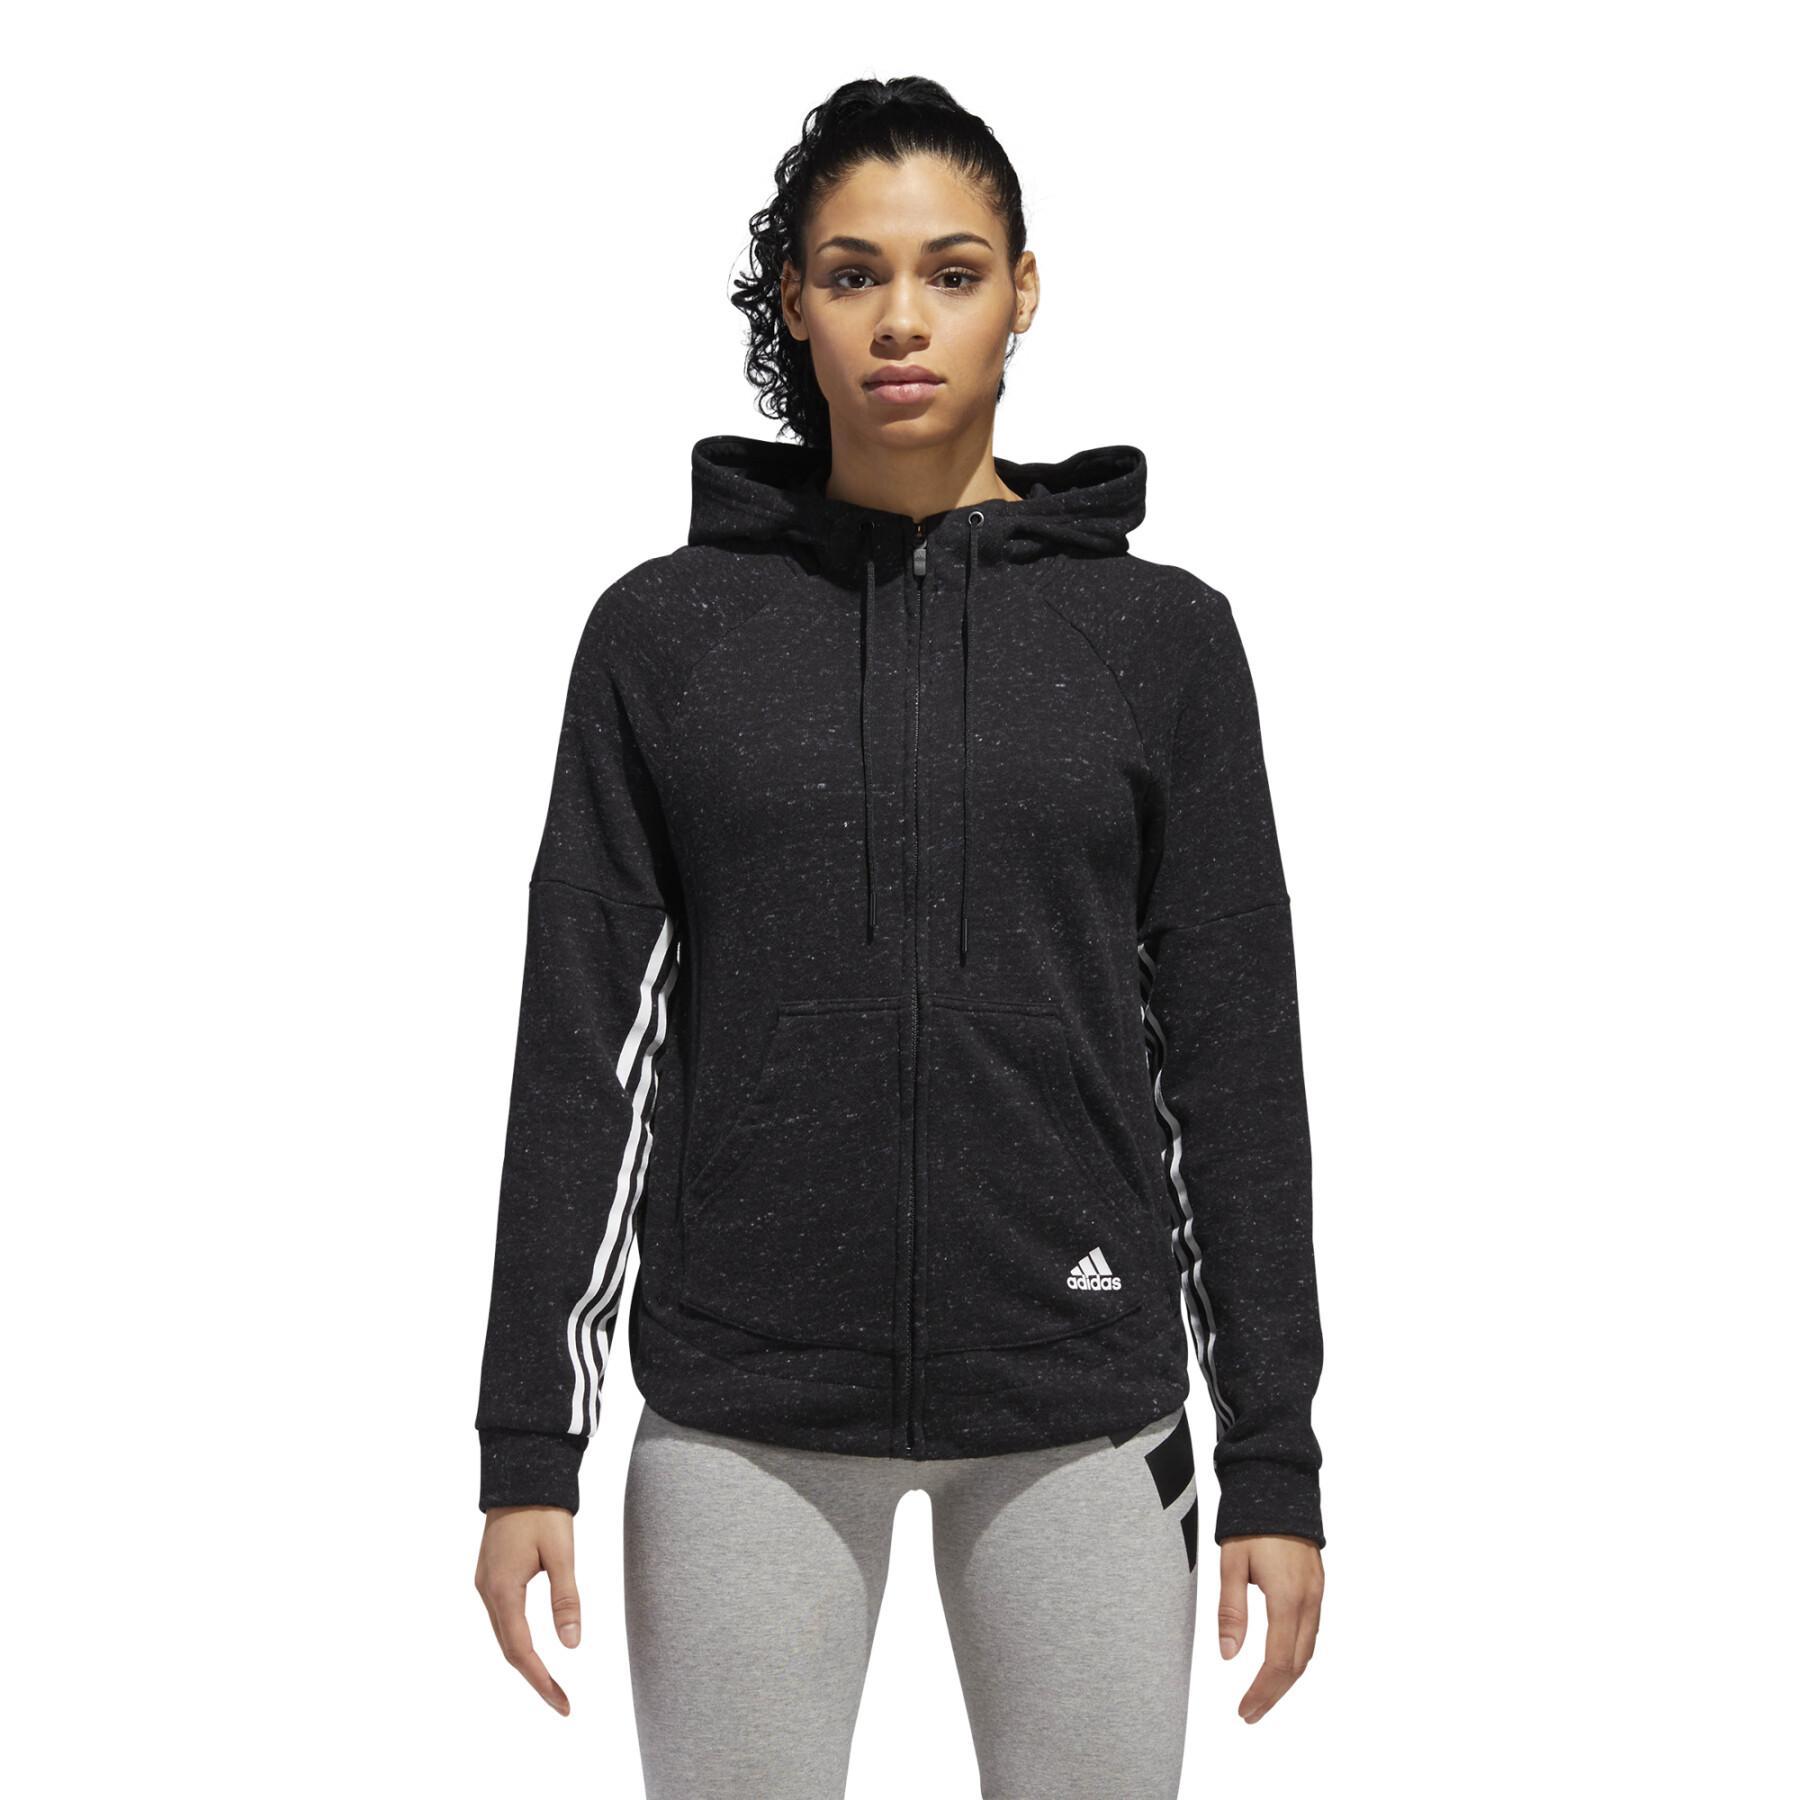 Women's hooded jacket adidas Sport2Street